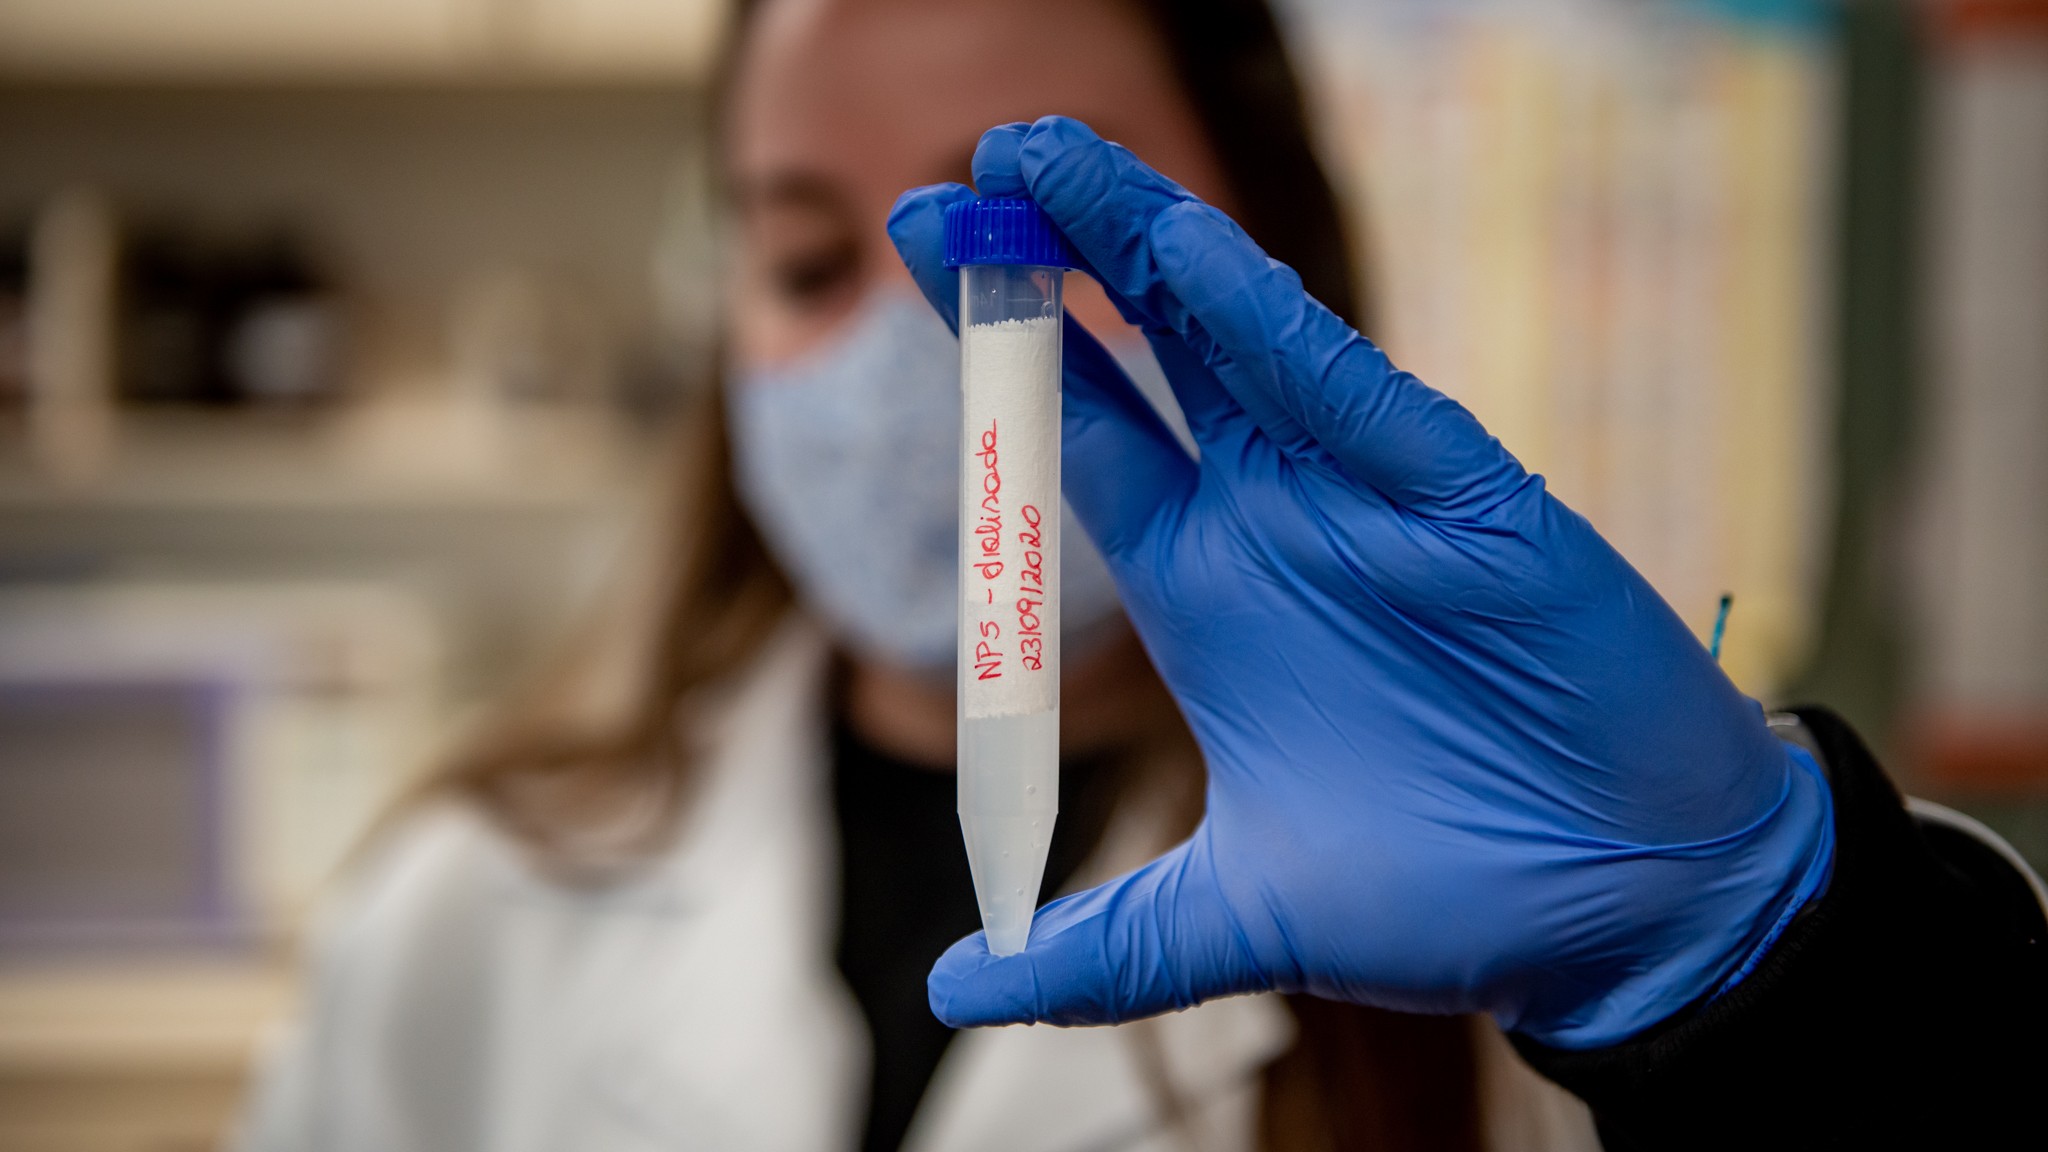 UFPR pretende iniciar testes clínicos de vacina contra Covid-19 em 6 meses (Foto: Marcos Solivan (Sucom UFPR))